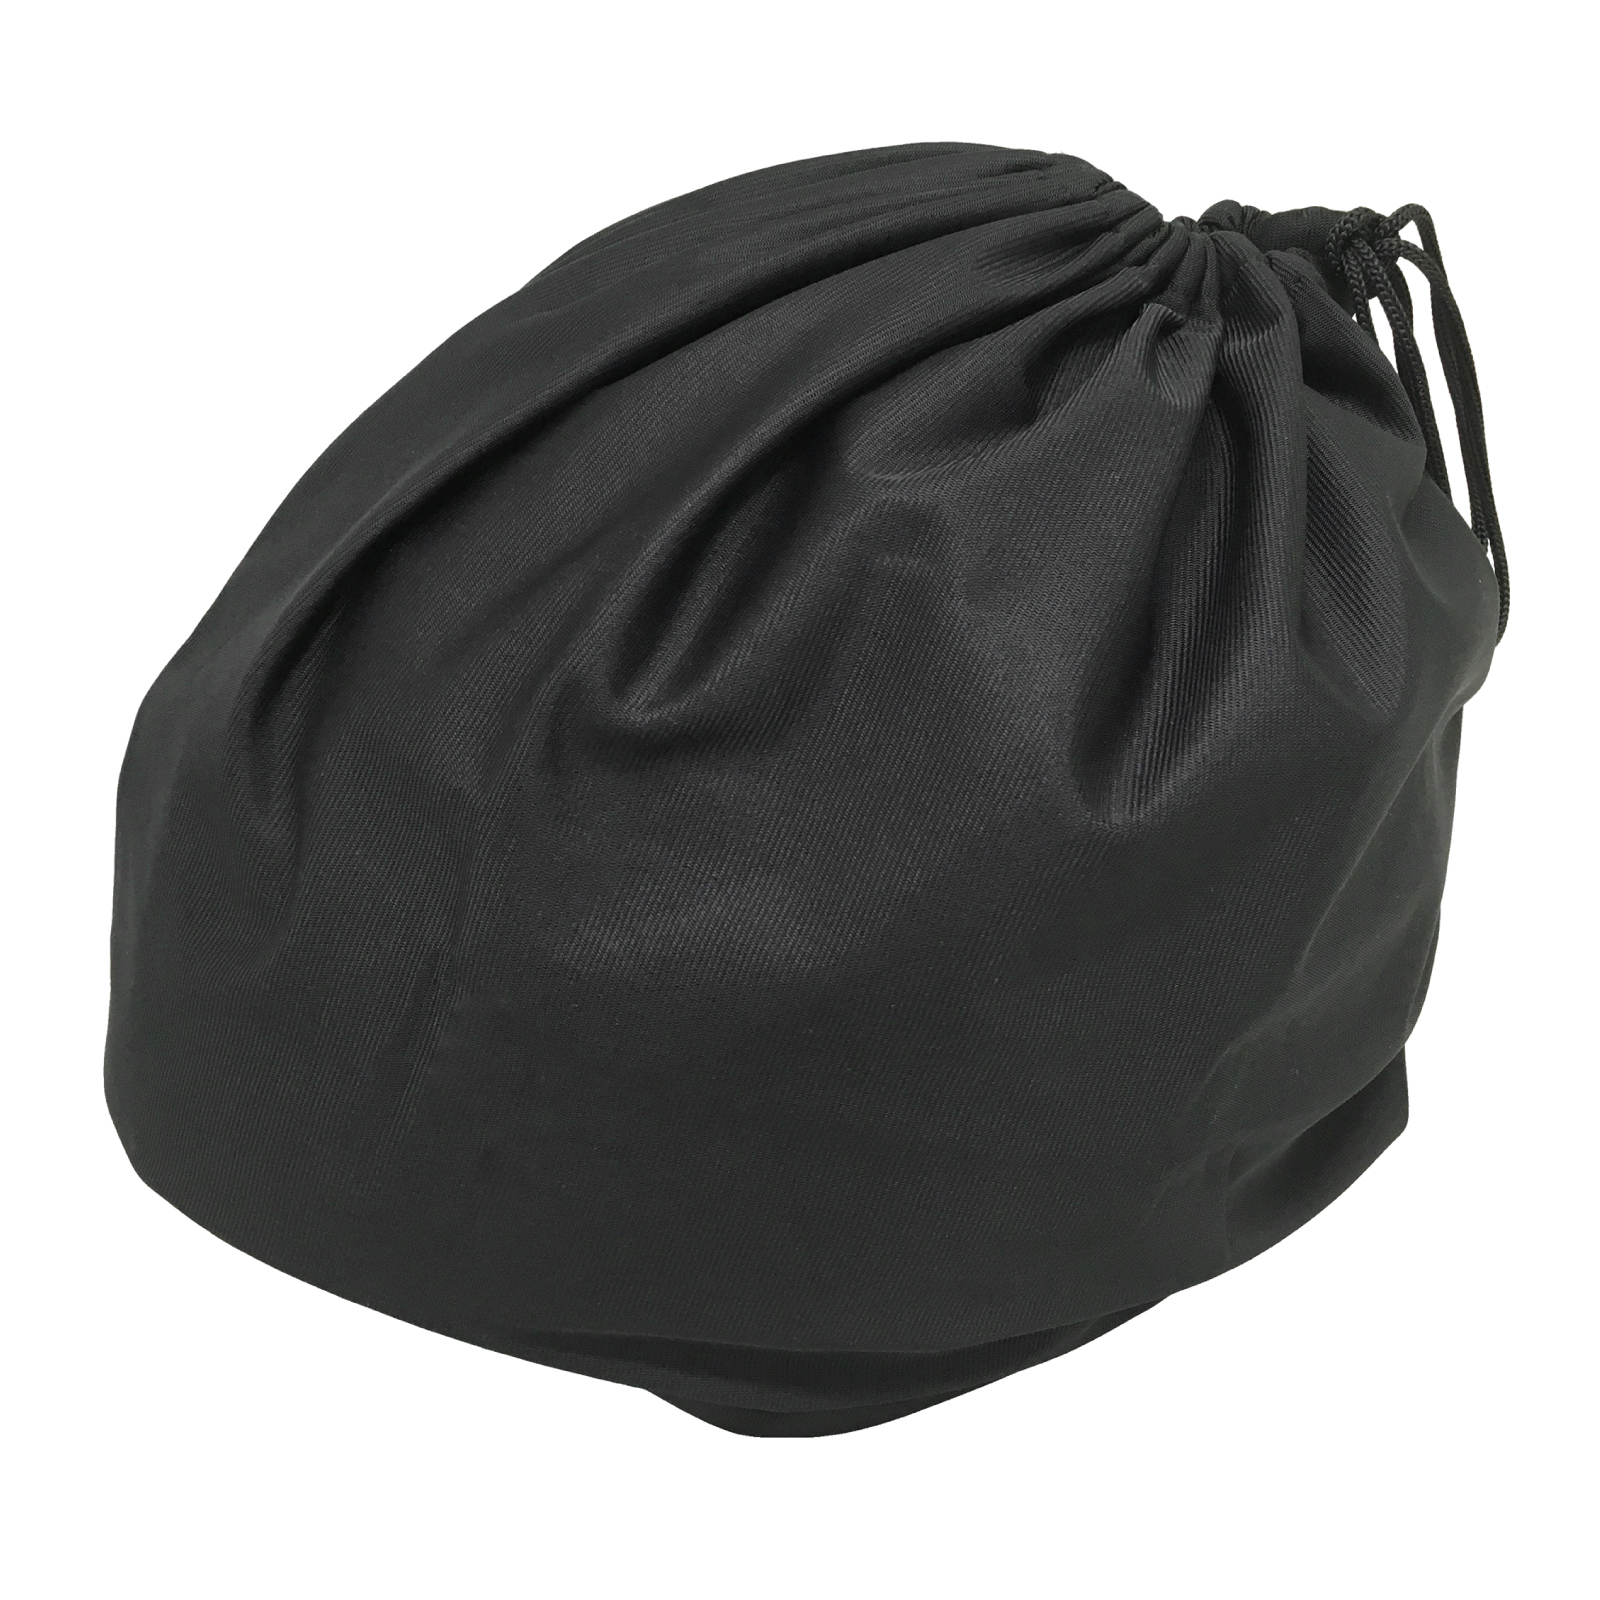 ヘルメットバッグ 巾着タイプ リュックタイプ 保護袋  袋 保管 ブラック 柔軟 軽量 ヘルメット 収納 バッグ バスケットボール サッカー